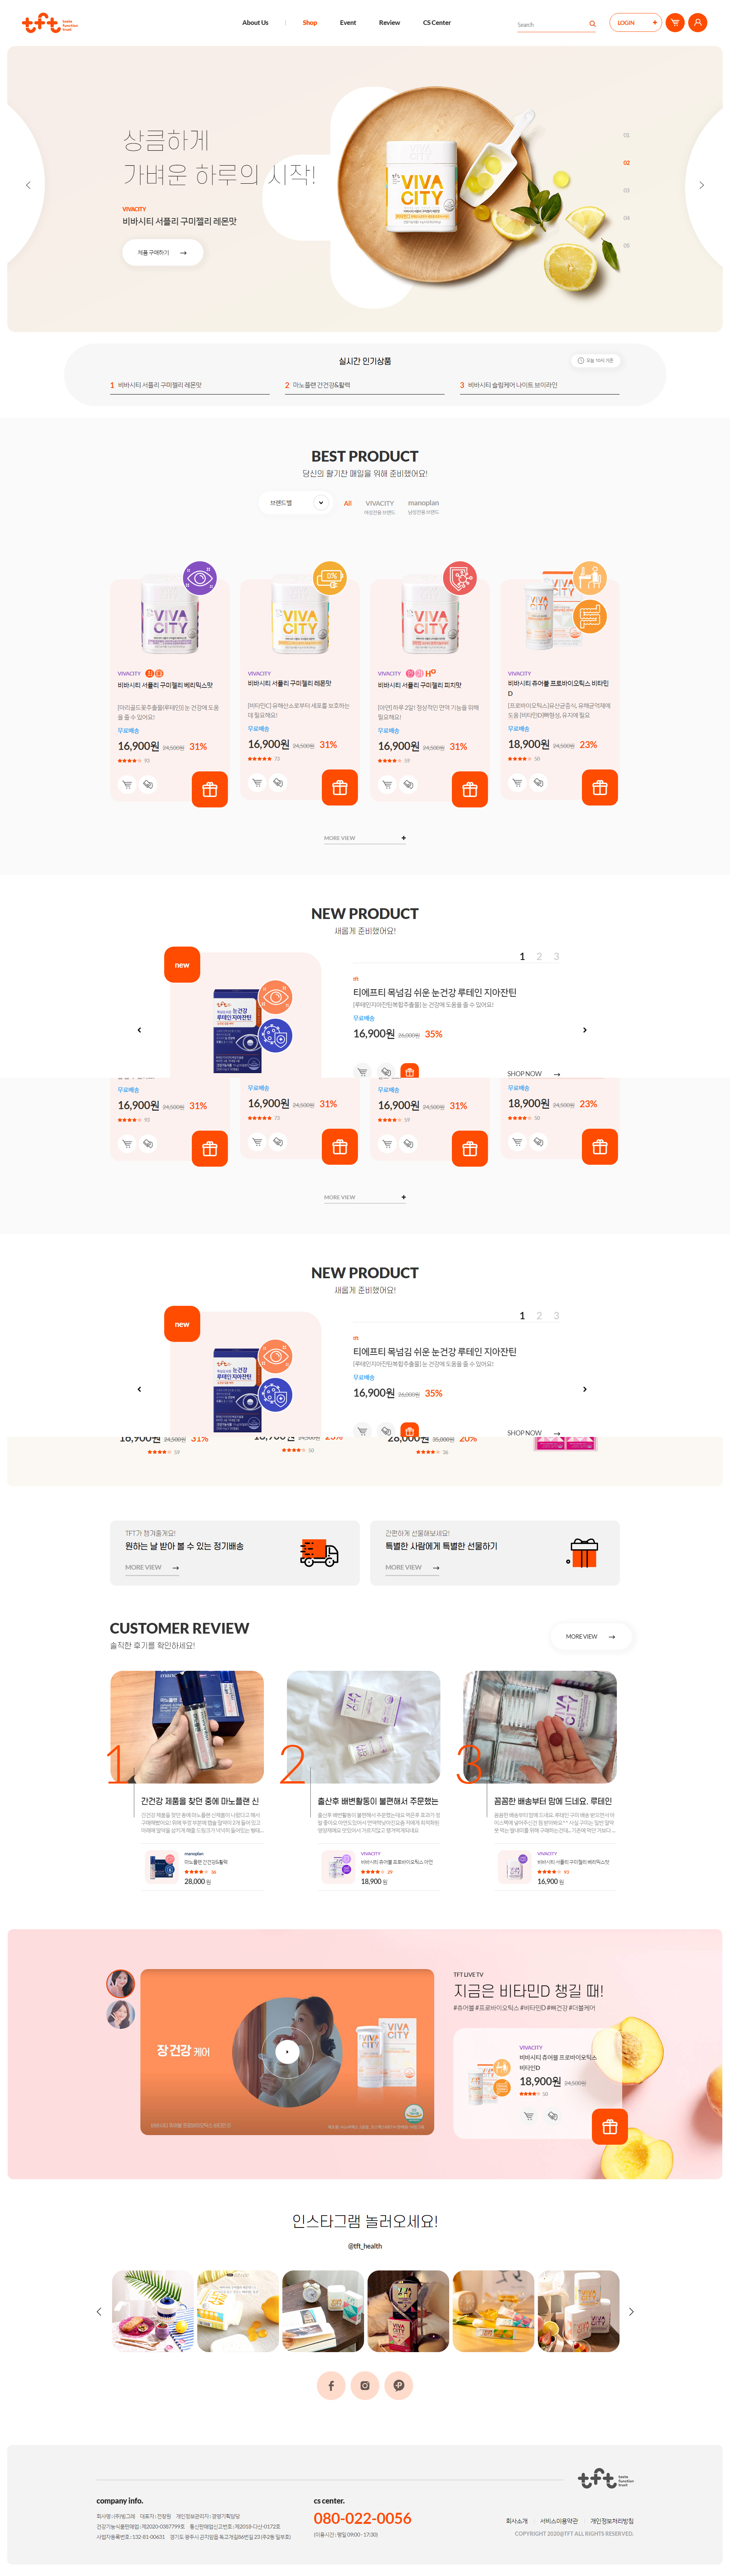 韩国tft购物网站设计